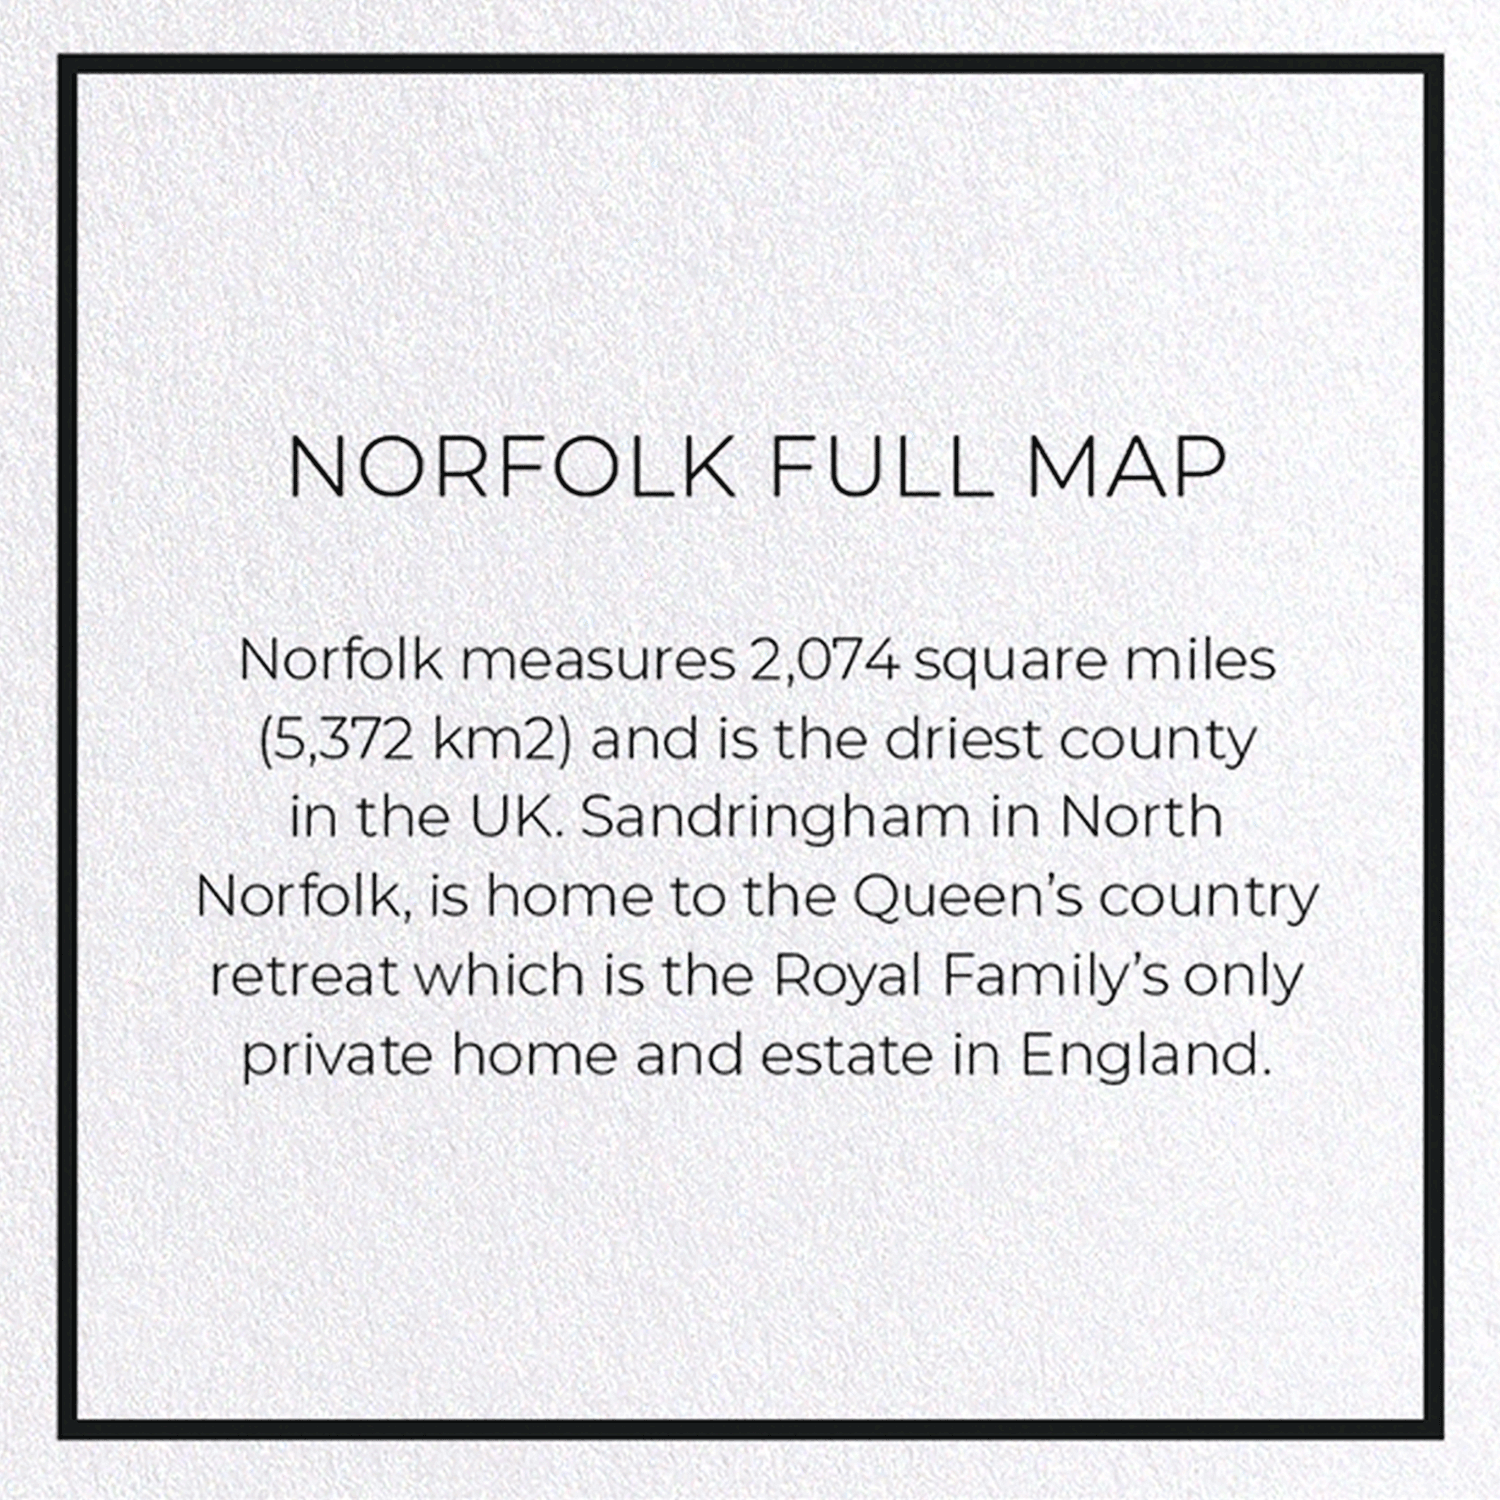 NORFOLK FULL MAP